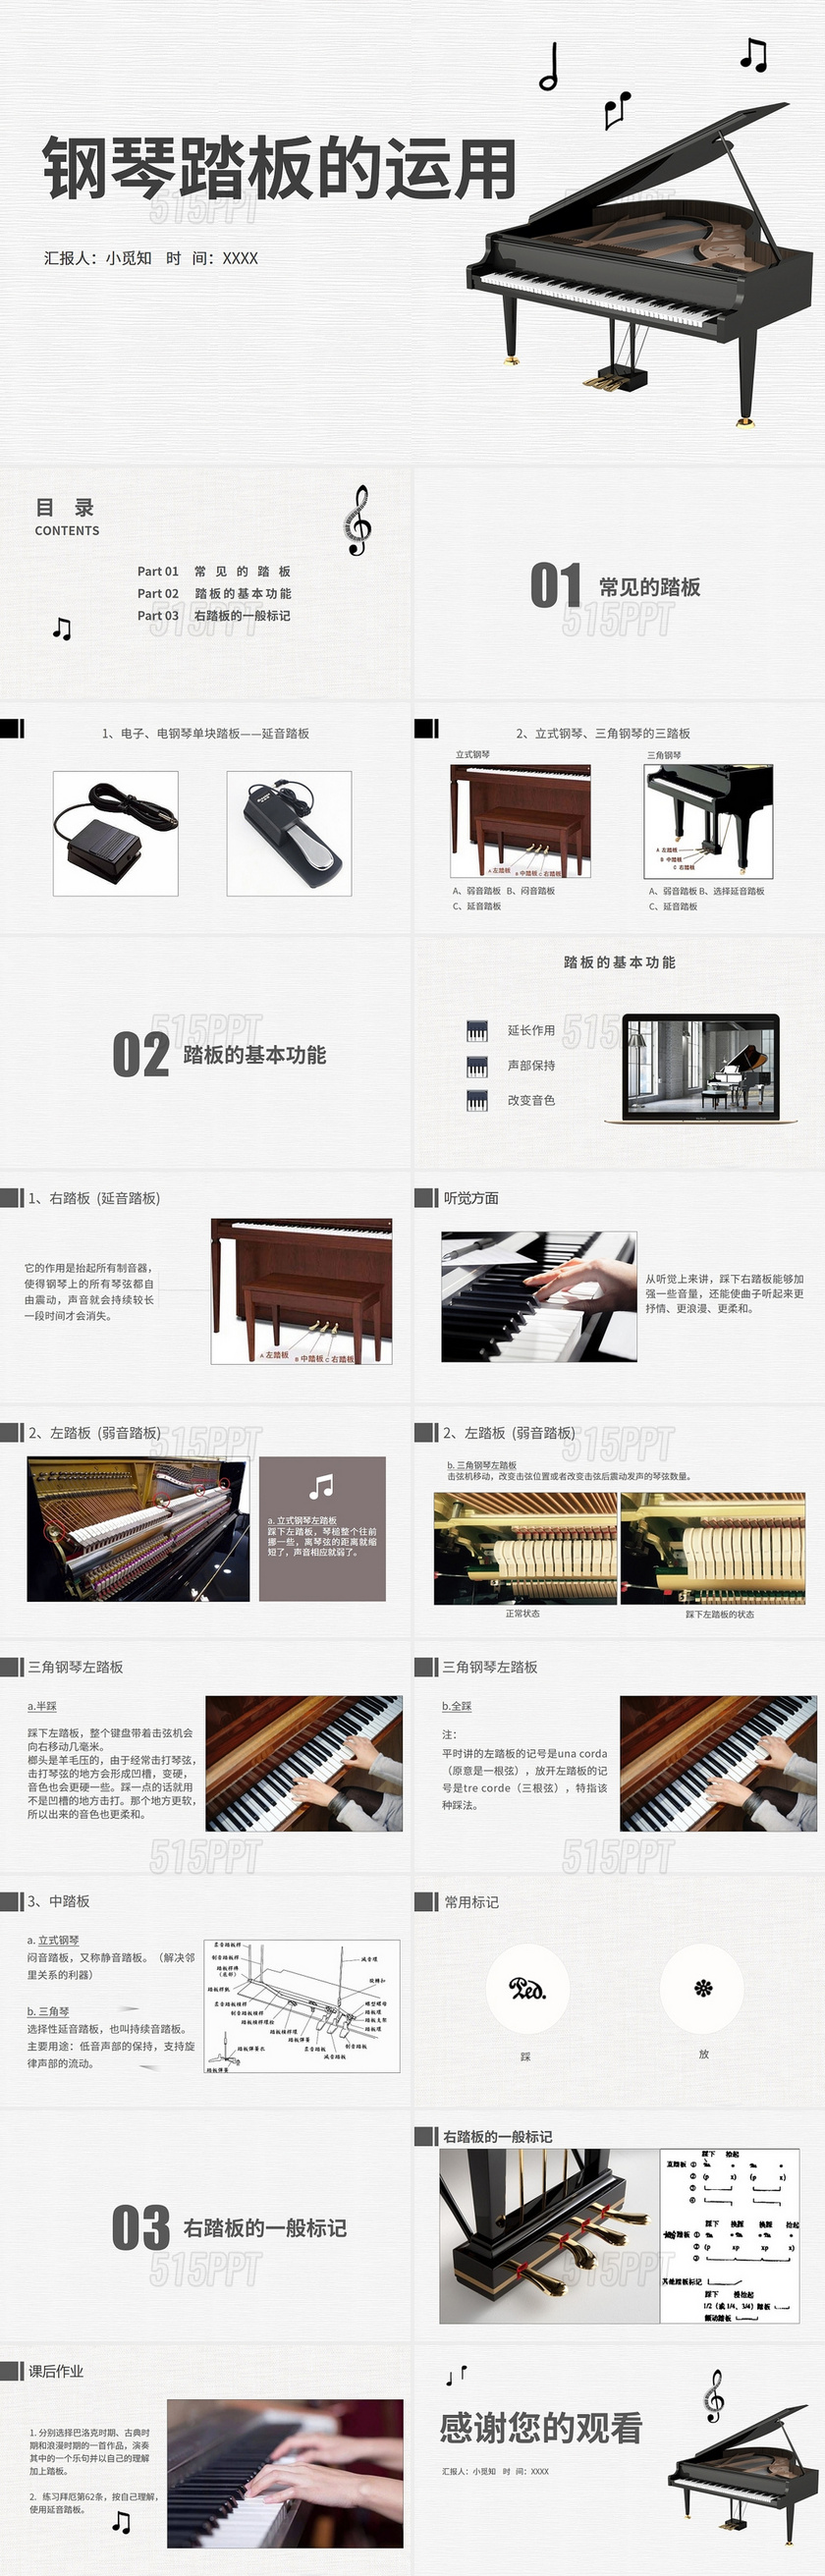 浅灰色简约风钢琴踏板的运用PPT模板钢琴踏板的运用ppt